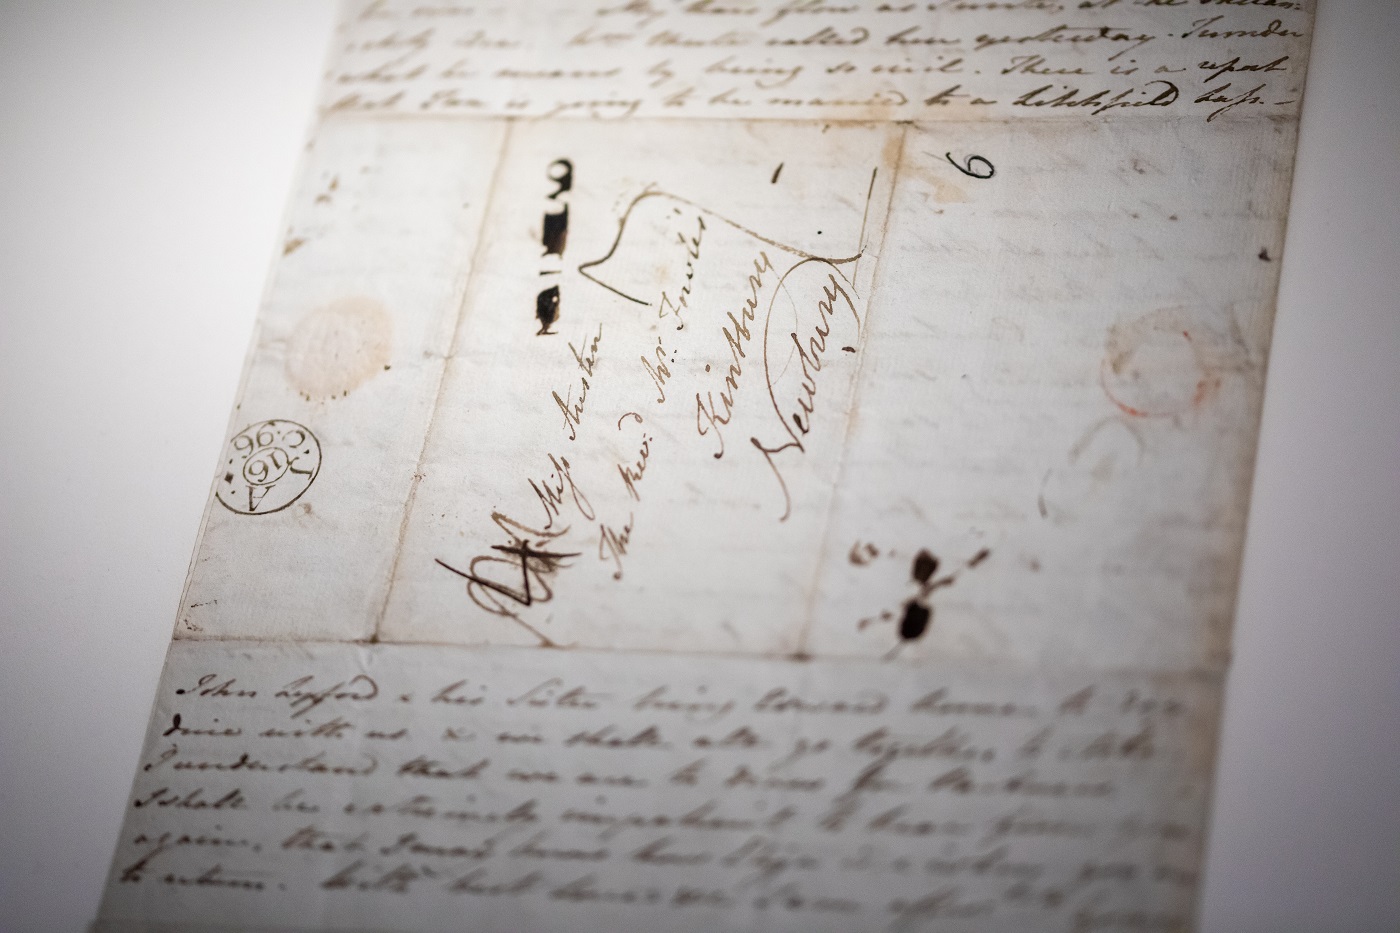 A manuscript letter by Jane Austen. Photo by Luke Shears